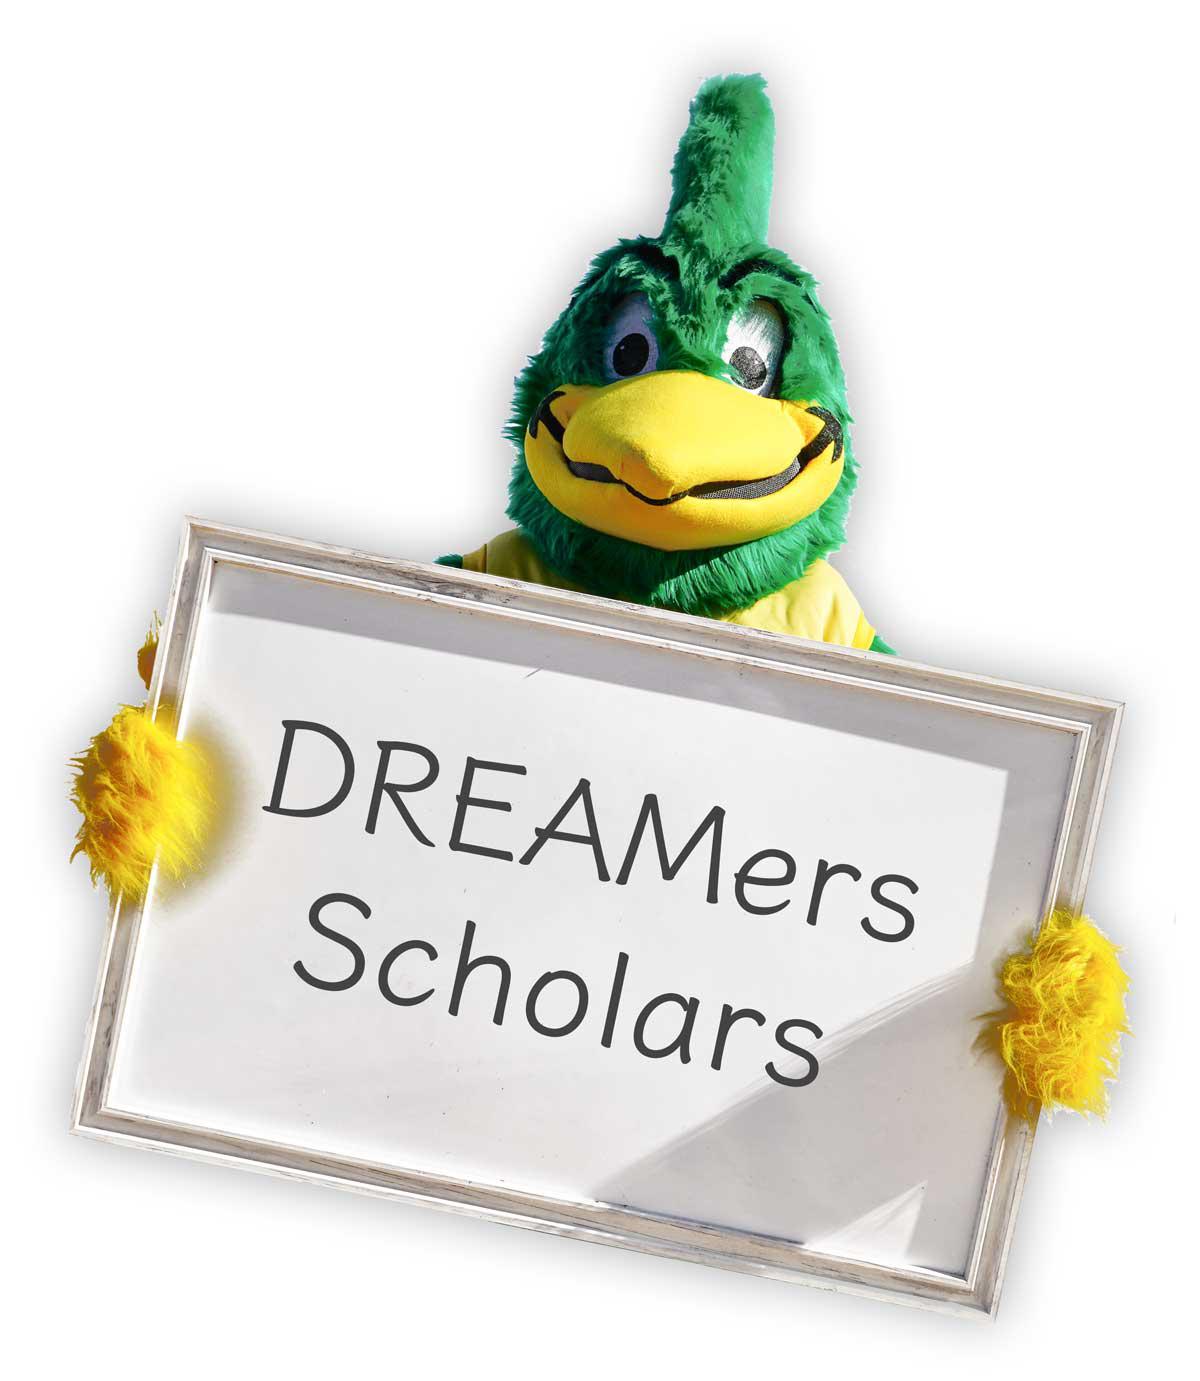 DREAMers Scholars